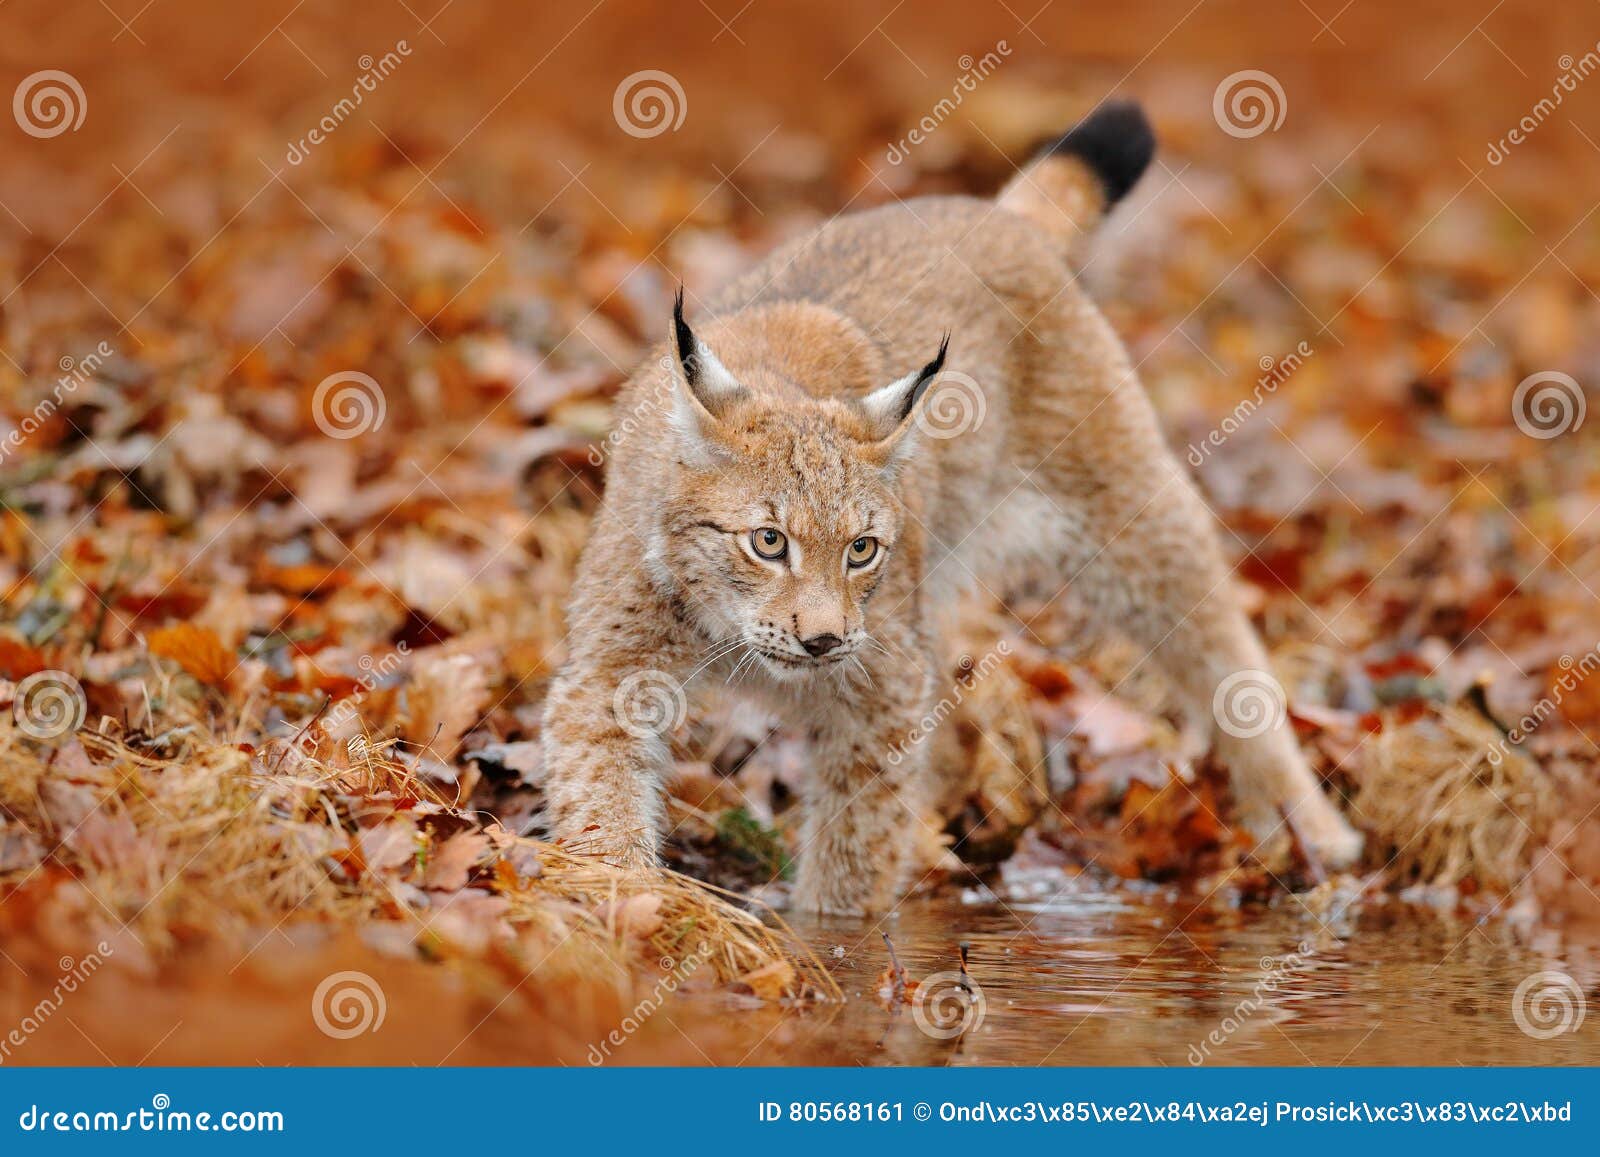 Foret D Automne Avec Le Lynx Lynx Marchant Dans Les Feuilles Oranges Animal Sauvage Cache Dans L Habitat De Nature Allemagne Lyn Image Stock Image Du Foret Dans